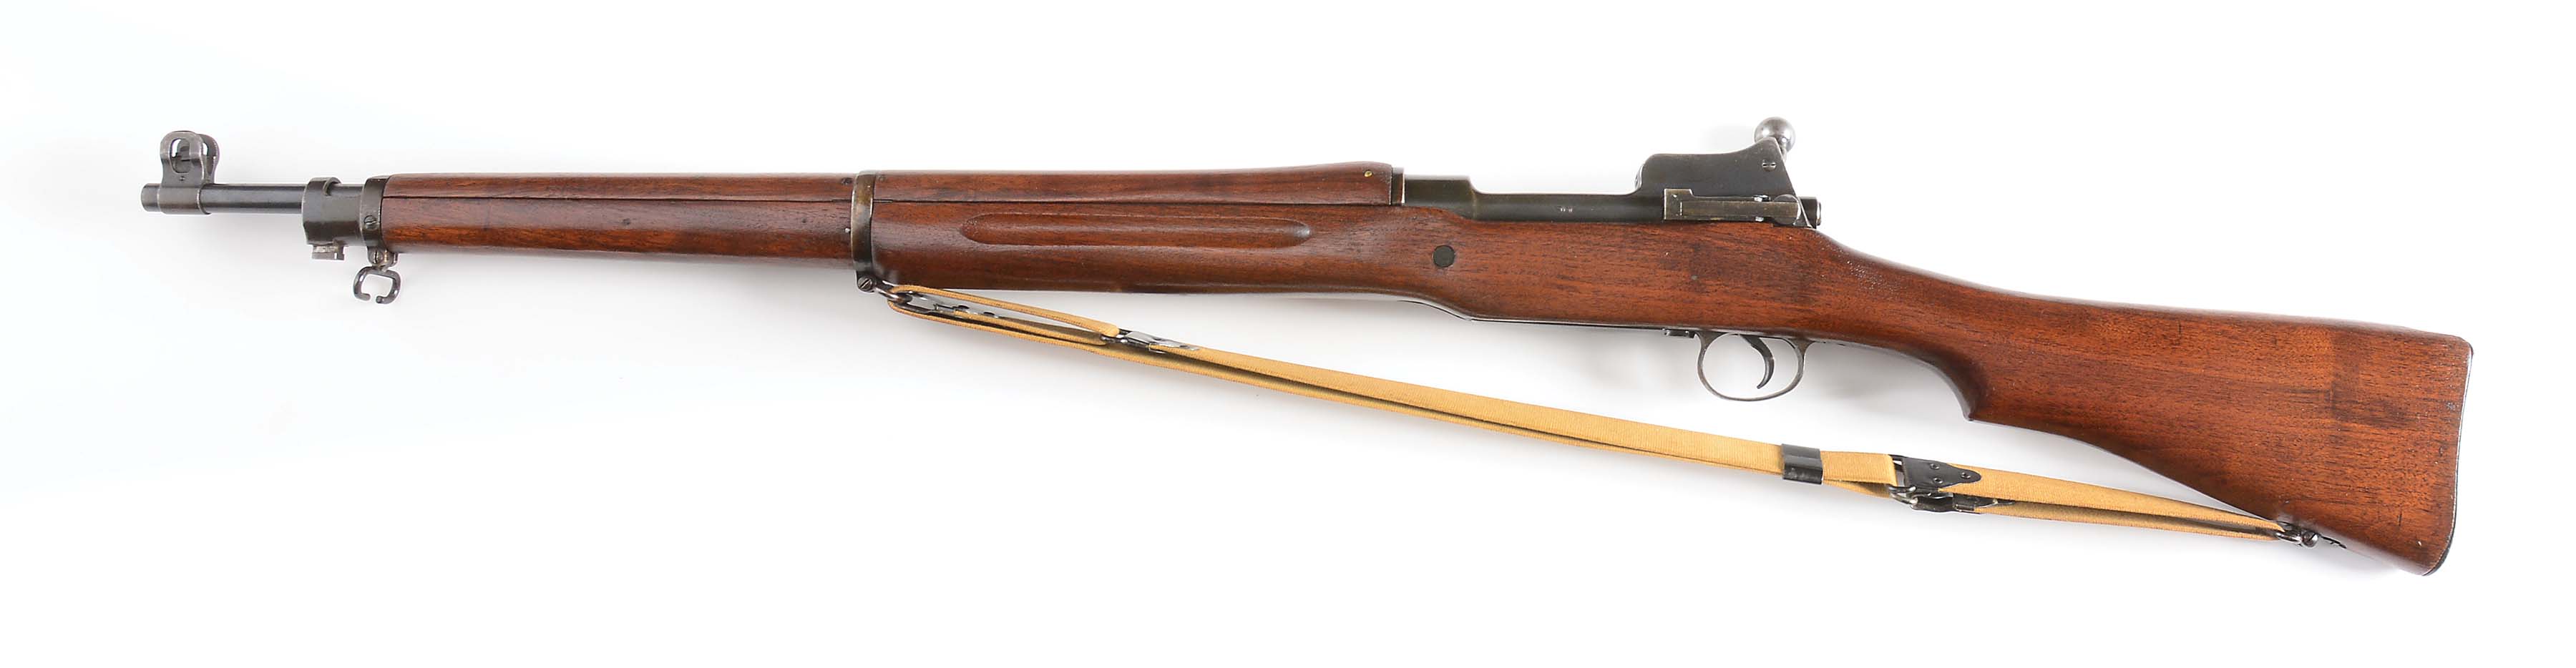 C) world war I usgi eddystone model 1917 enfield rifle 1918 with bayonet. 